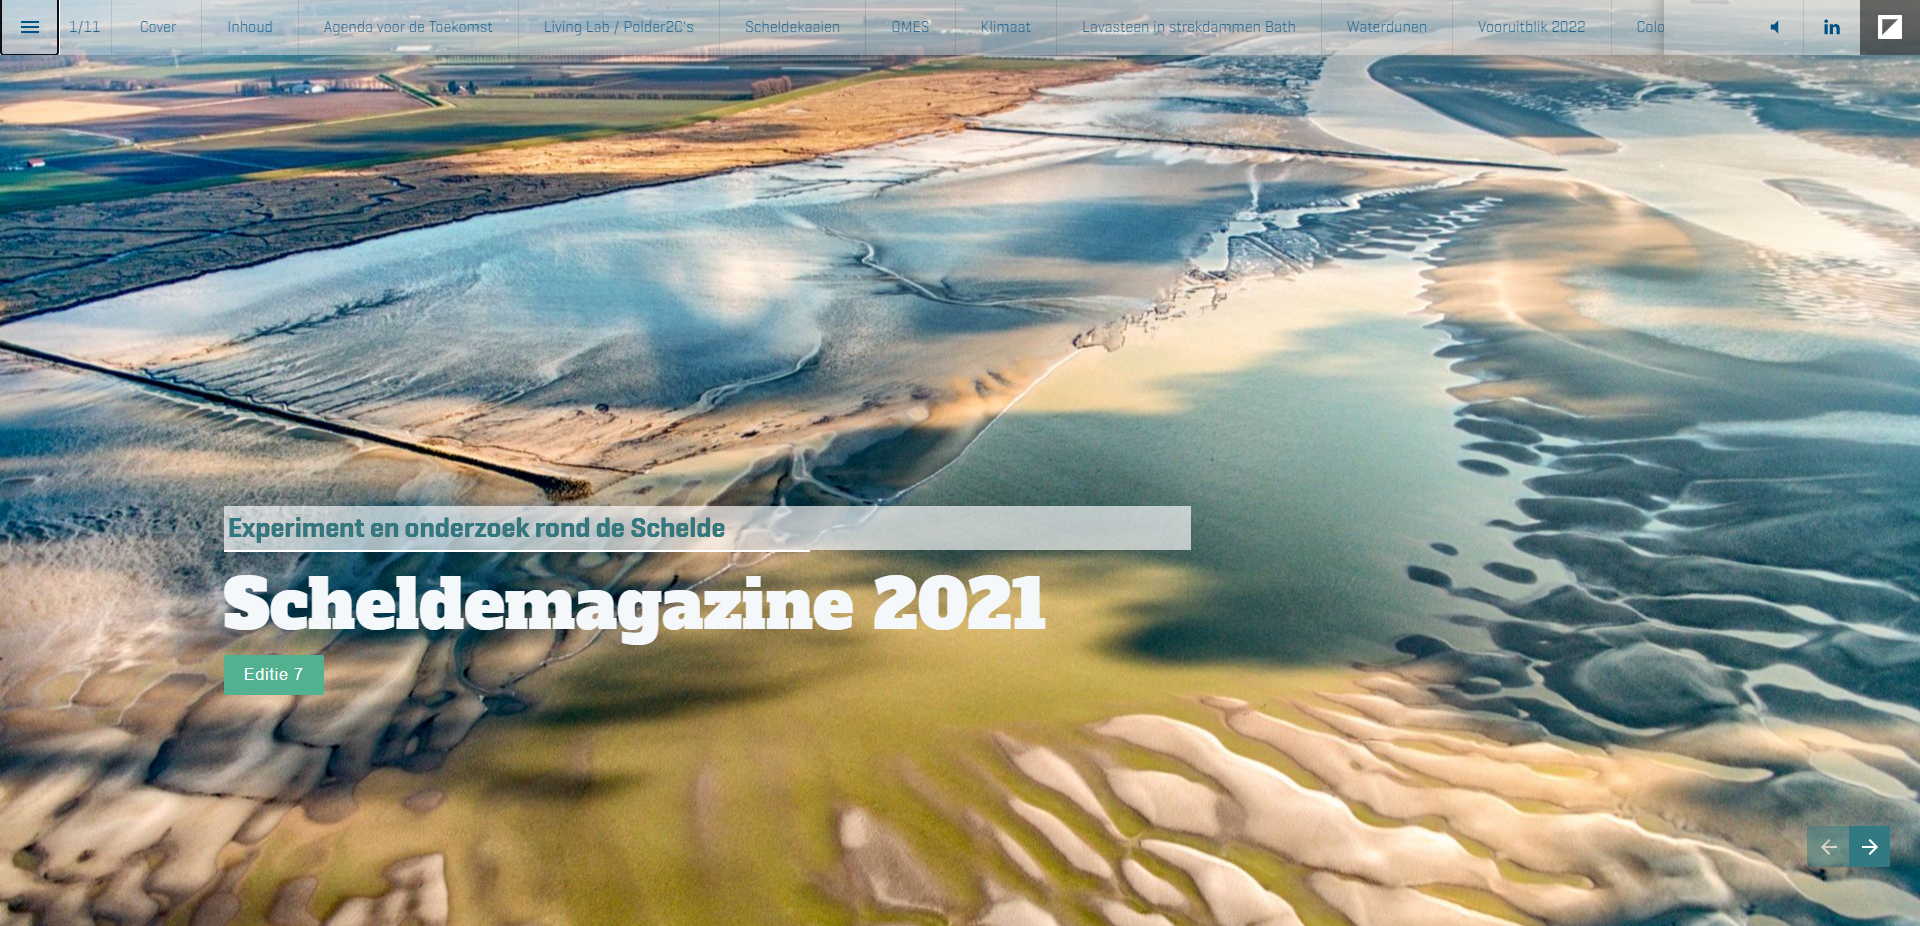 Screenshot van de cover van het Scheldemagazine 2021.